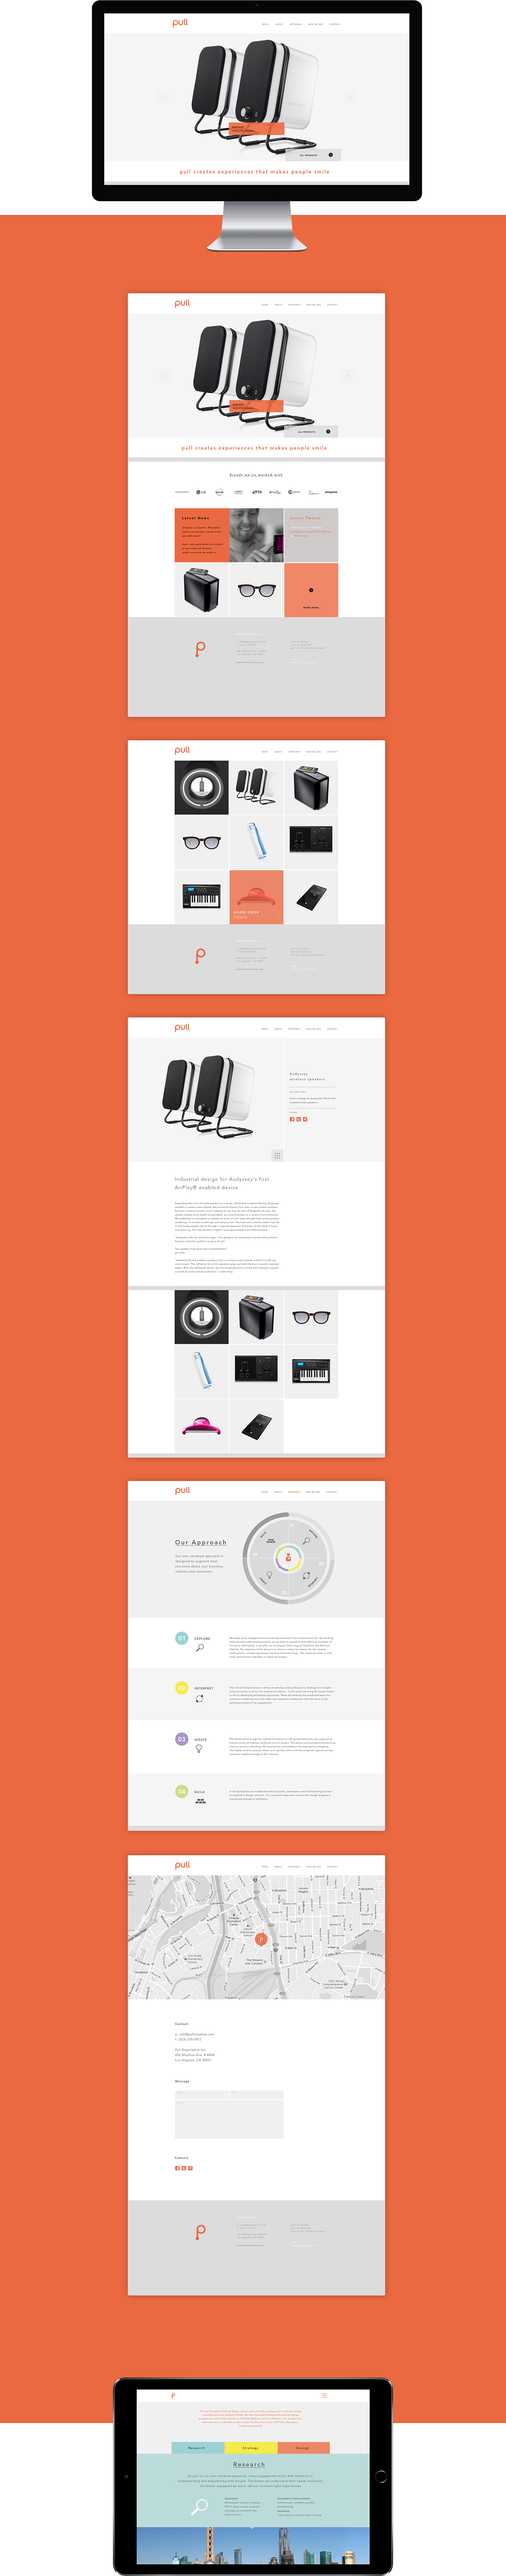 pull identity Webdesign infographic Icon orange experience agency Minimalism